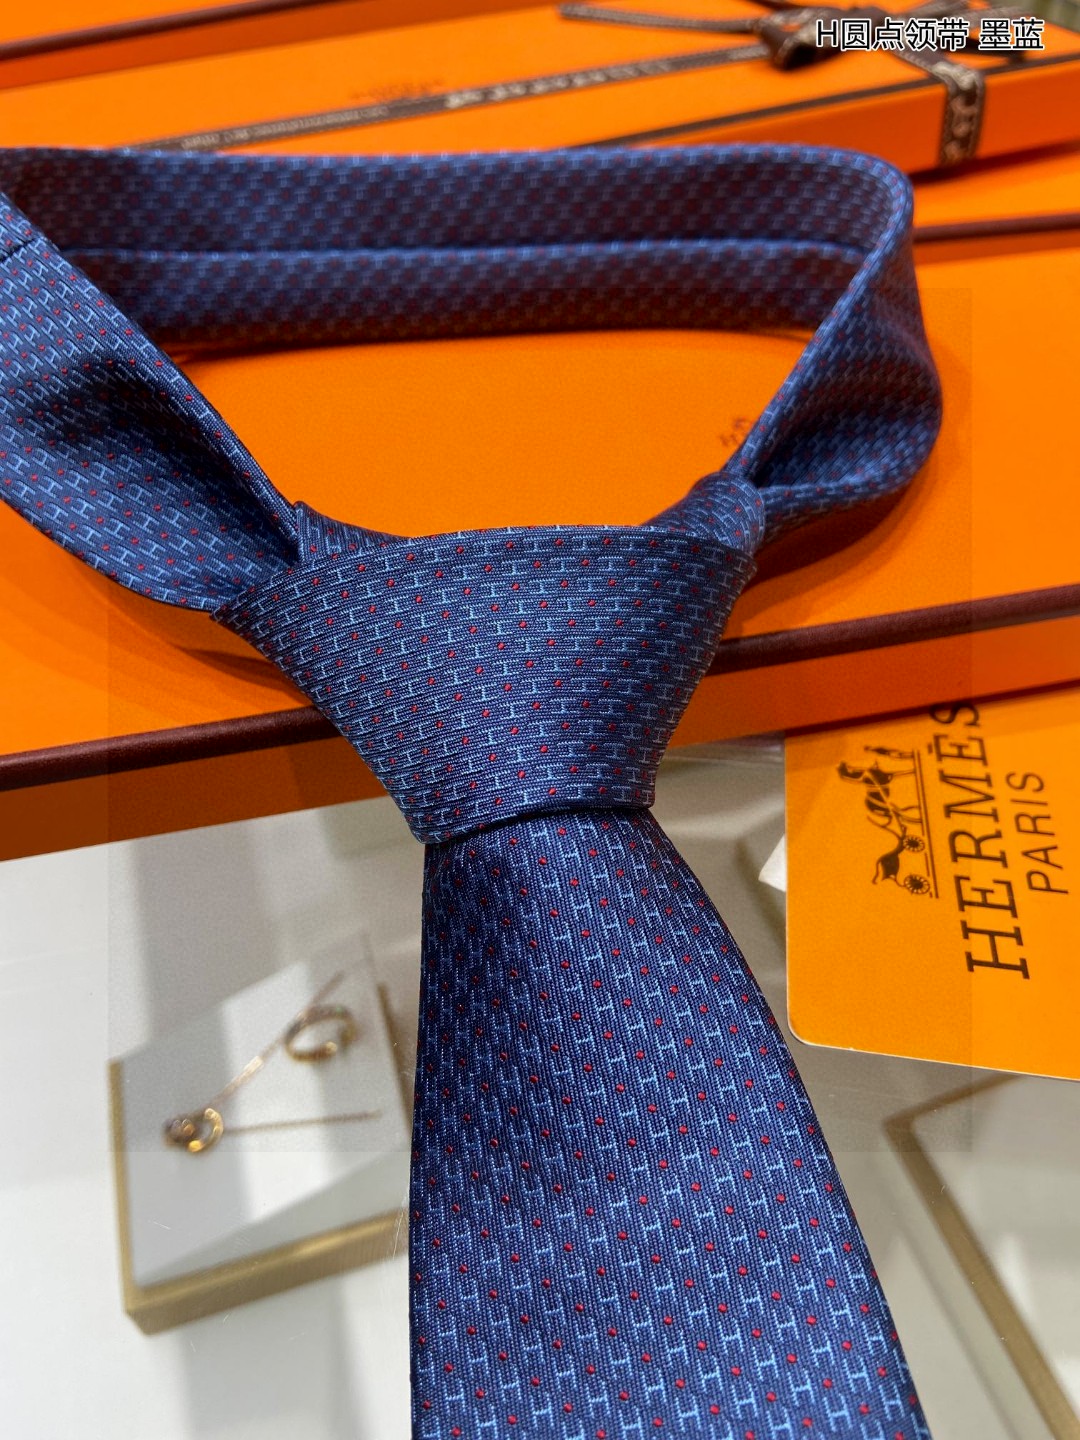 特价男士新款领带系列H圆点领带稀有H家每年都有一千条不同印花的领带面世从最初的多以几何图案表现骑术活动为